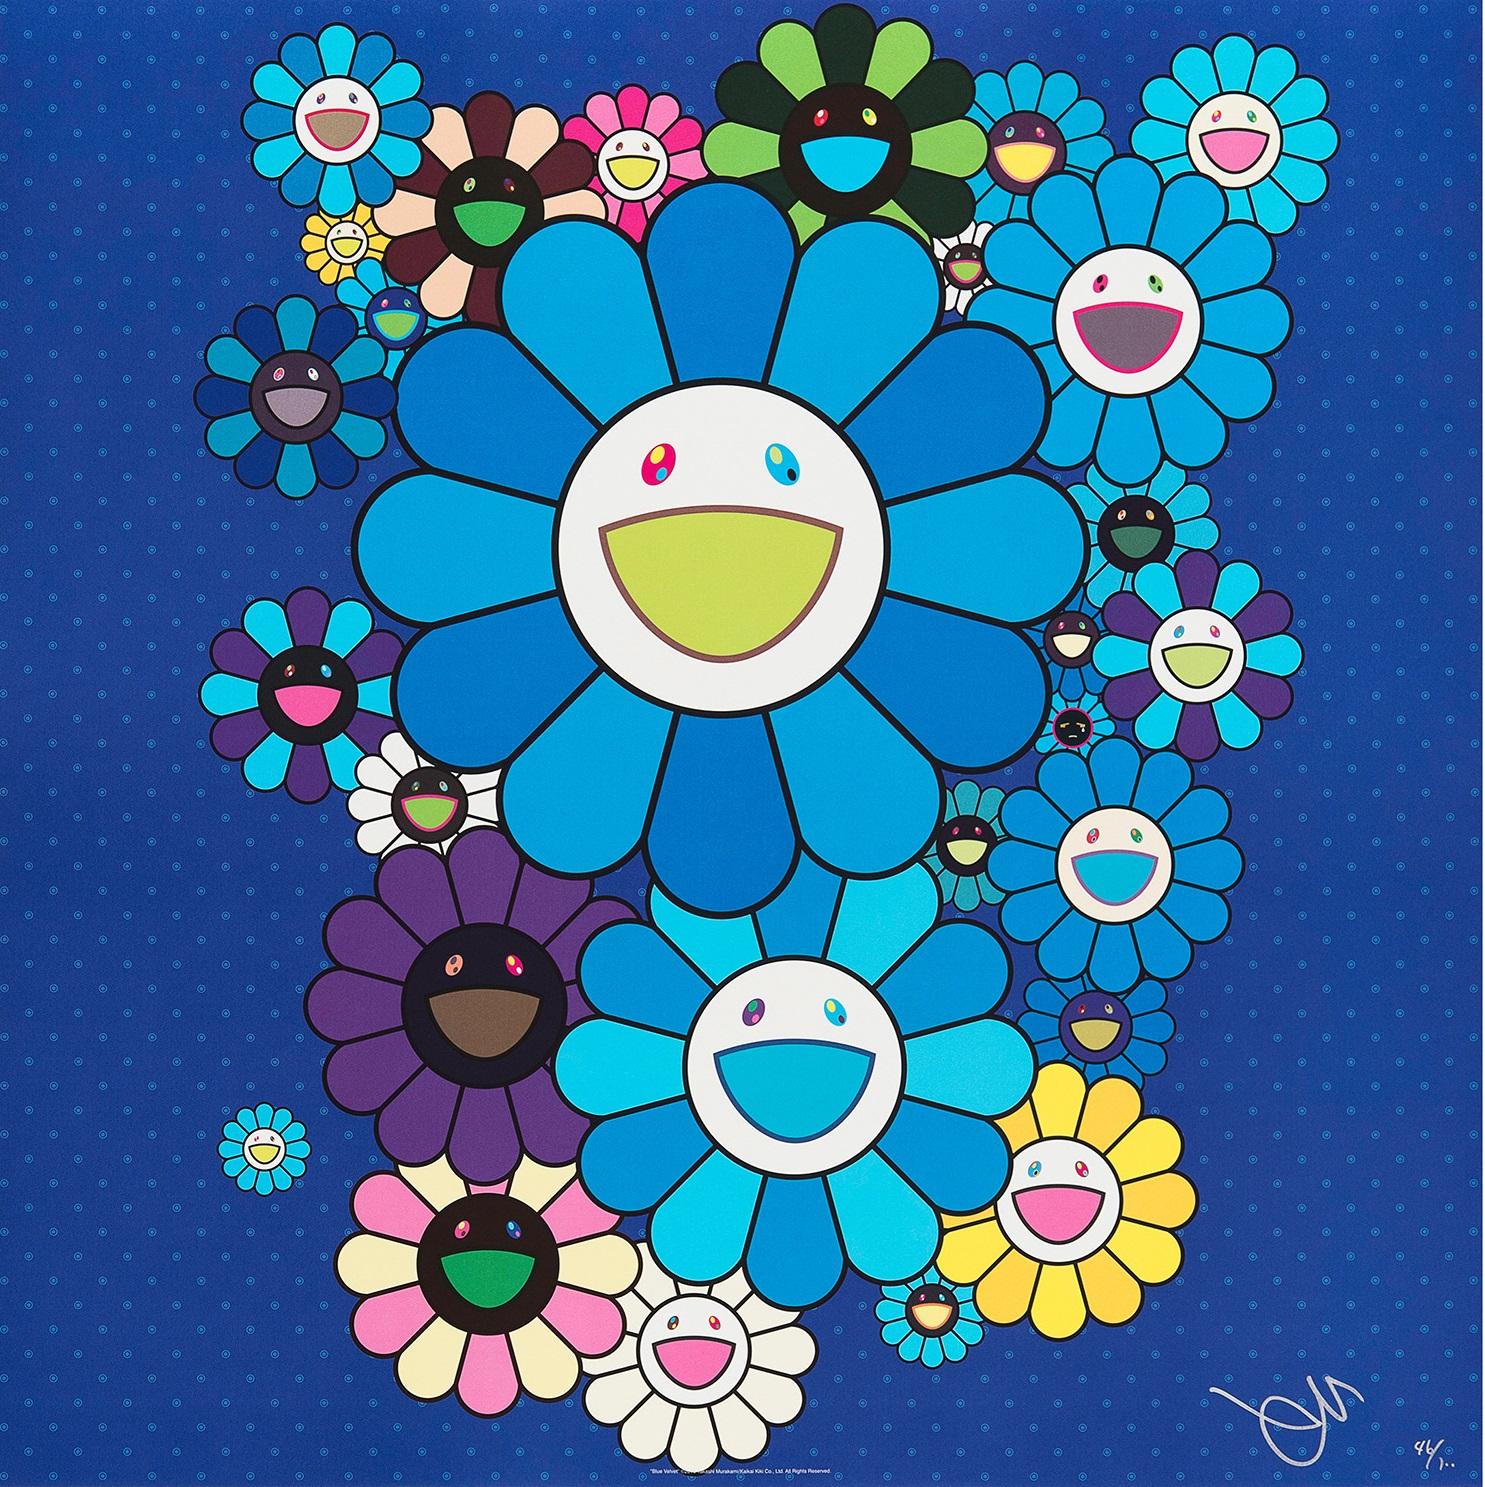 Blue Velvet, 2016 par Takashi Murakami
Impression offset, numérotée et signée par l'artiste
23 5/8 × 23 5/8 in
60 × 60 cm
Édition  218/300

Takashi Murakami est surtout connu pour sa combinaison contemporaine de beaux-arts et de culture pop. Il